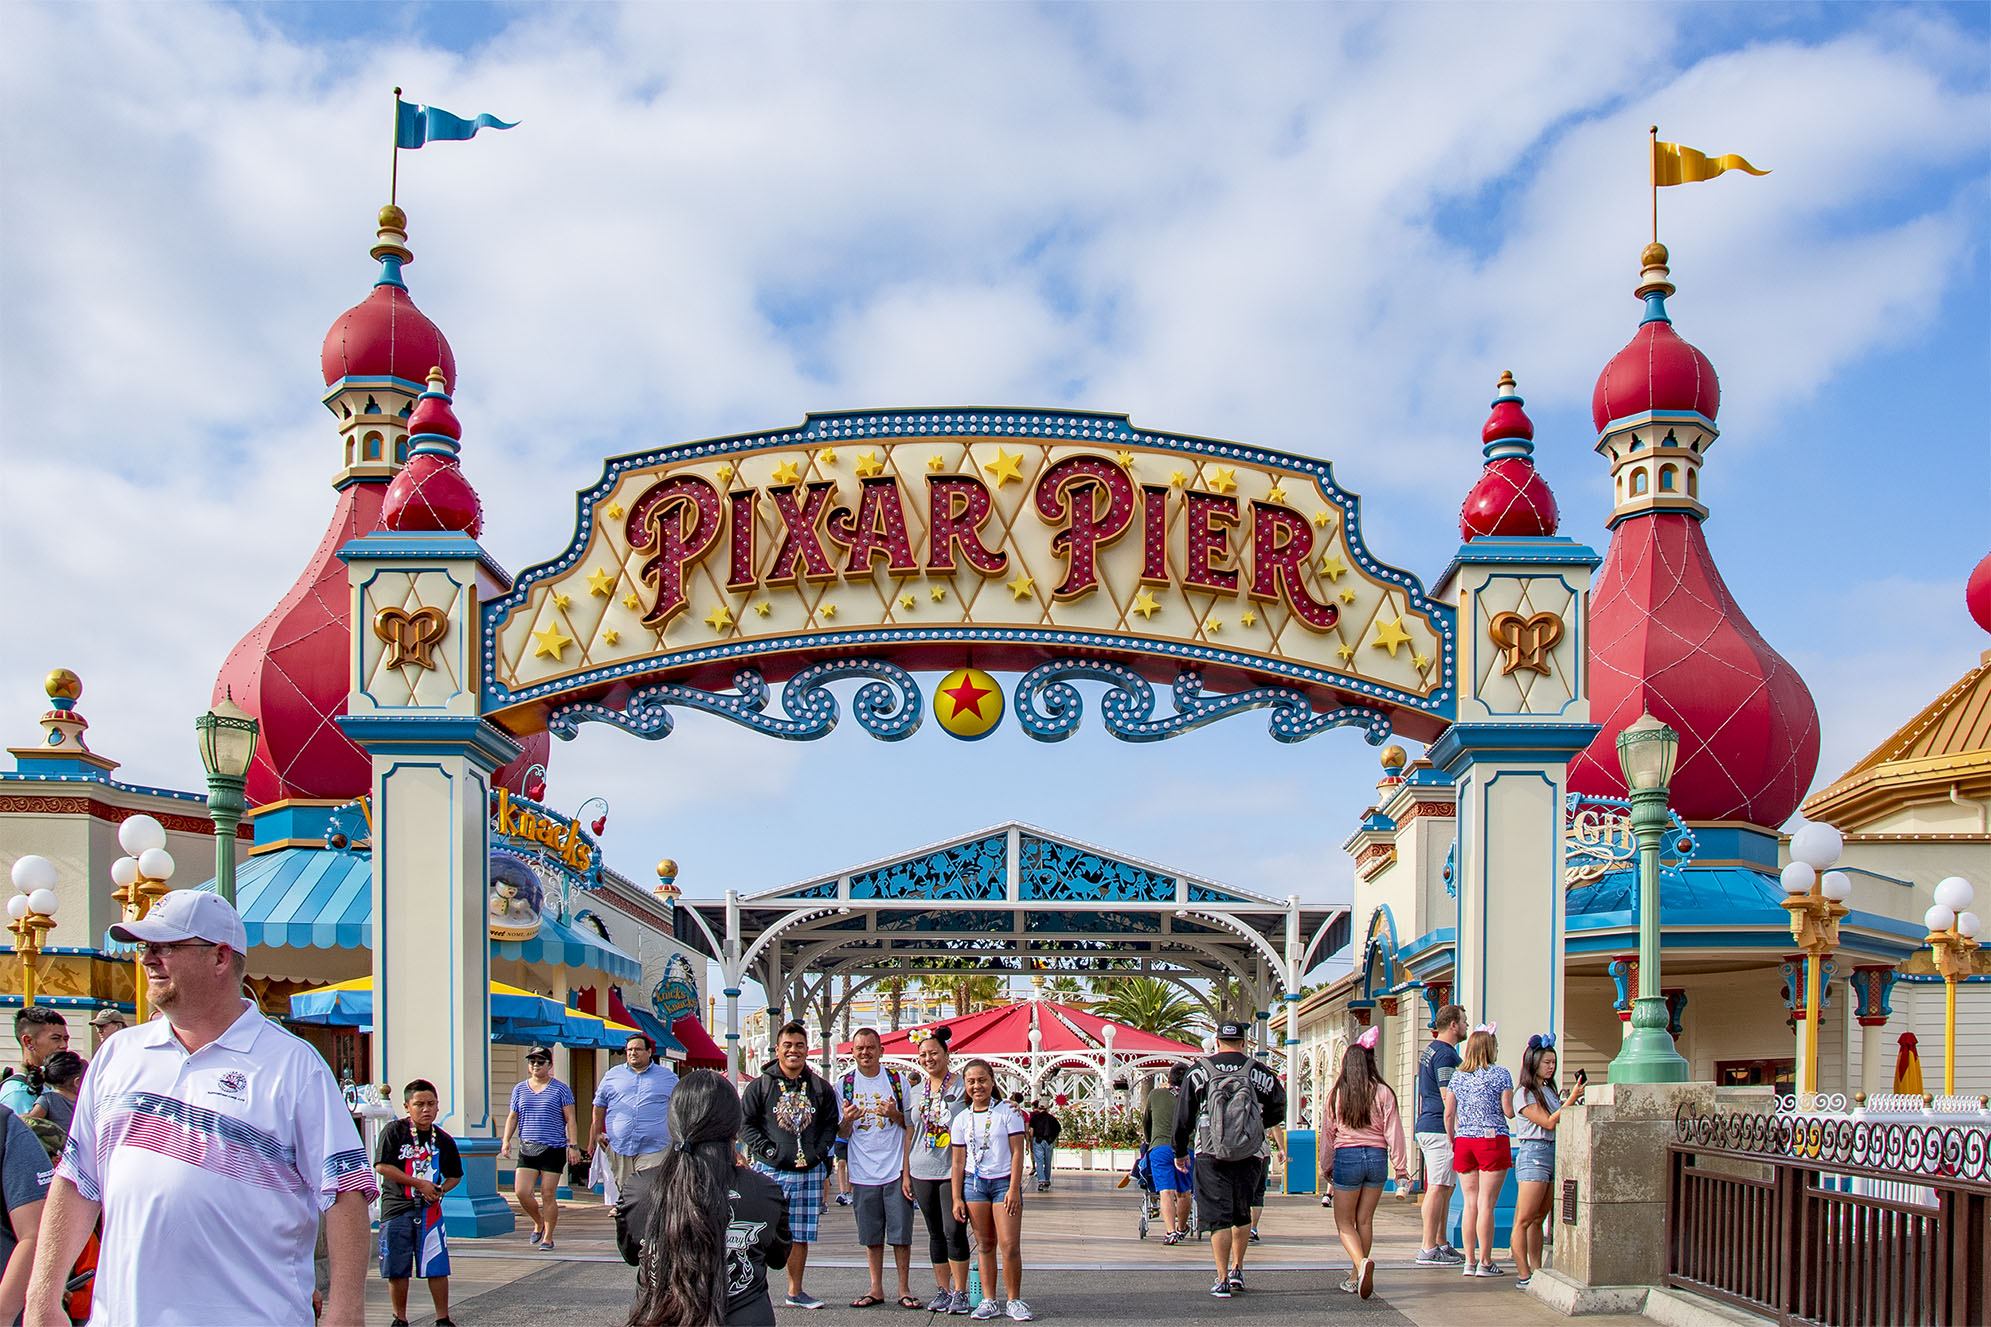 Pixar Pier Disney California Adventure Park